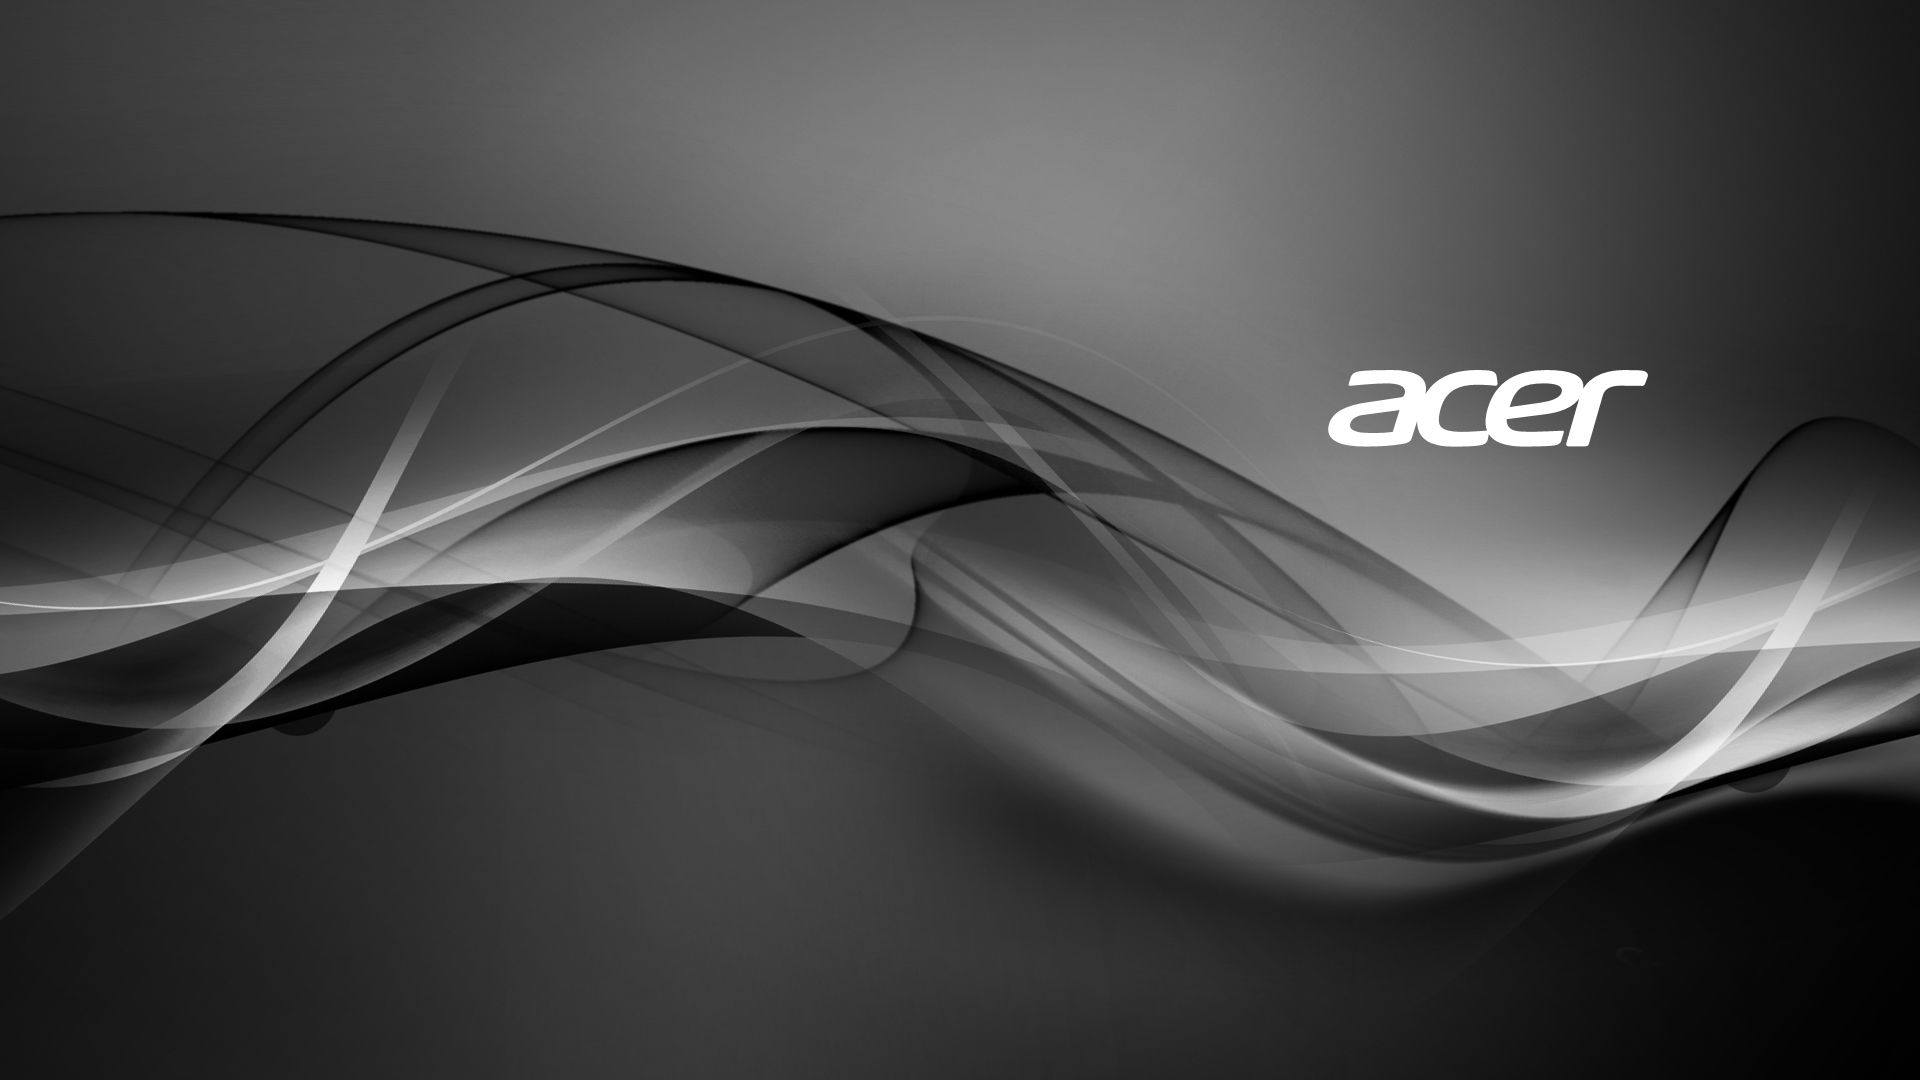 Acer Desktop Background